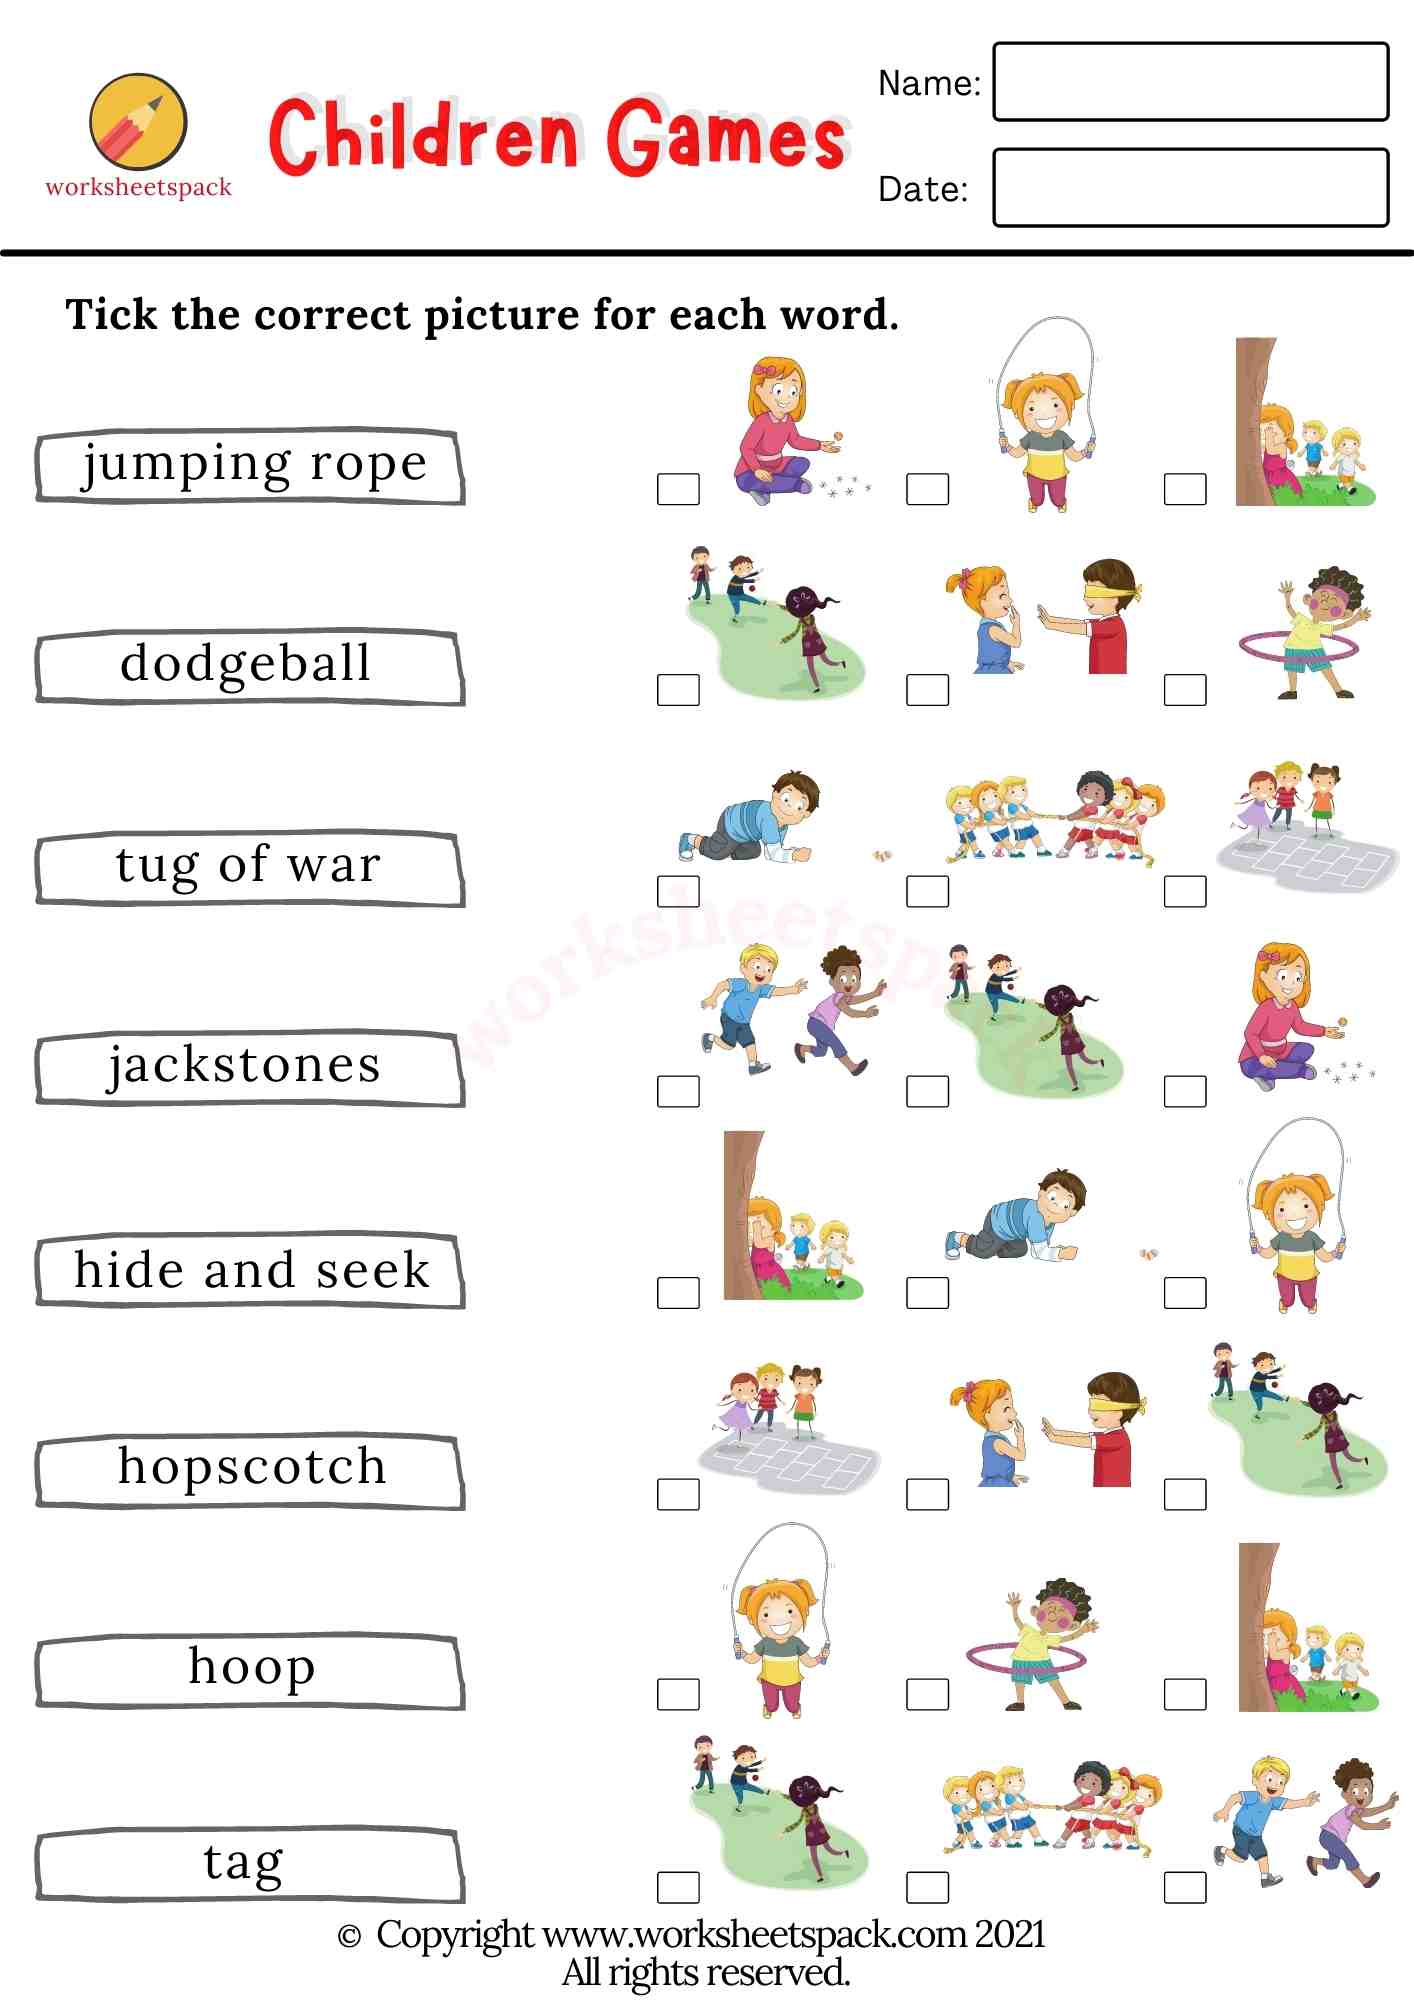 Children Games Worksheets Pdf Worksheetspack